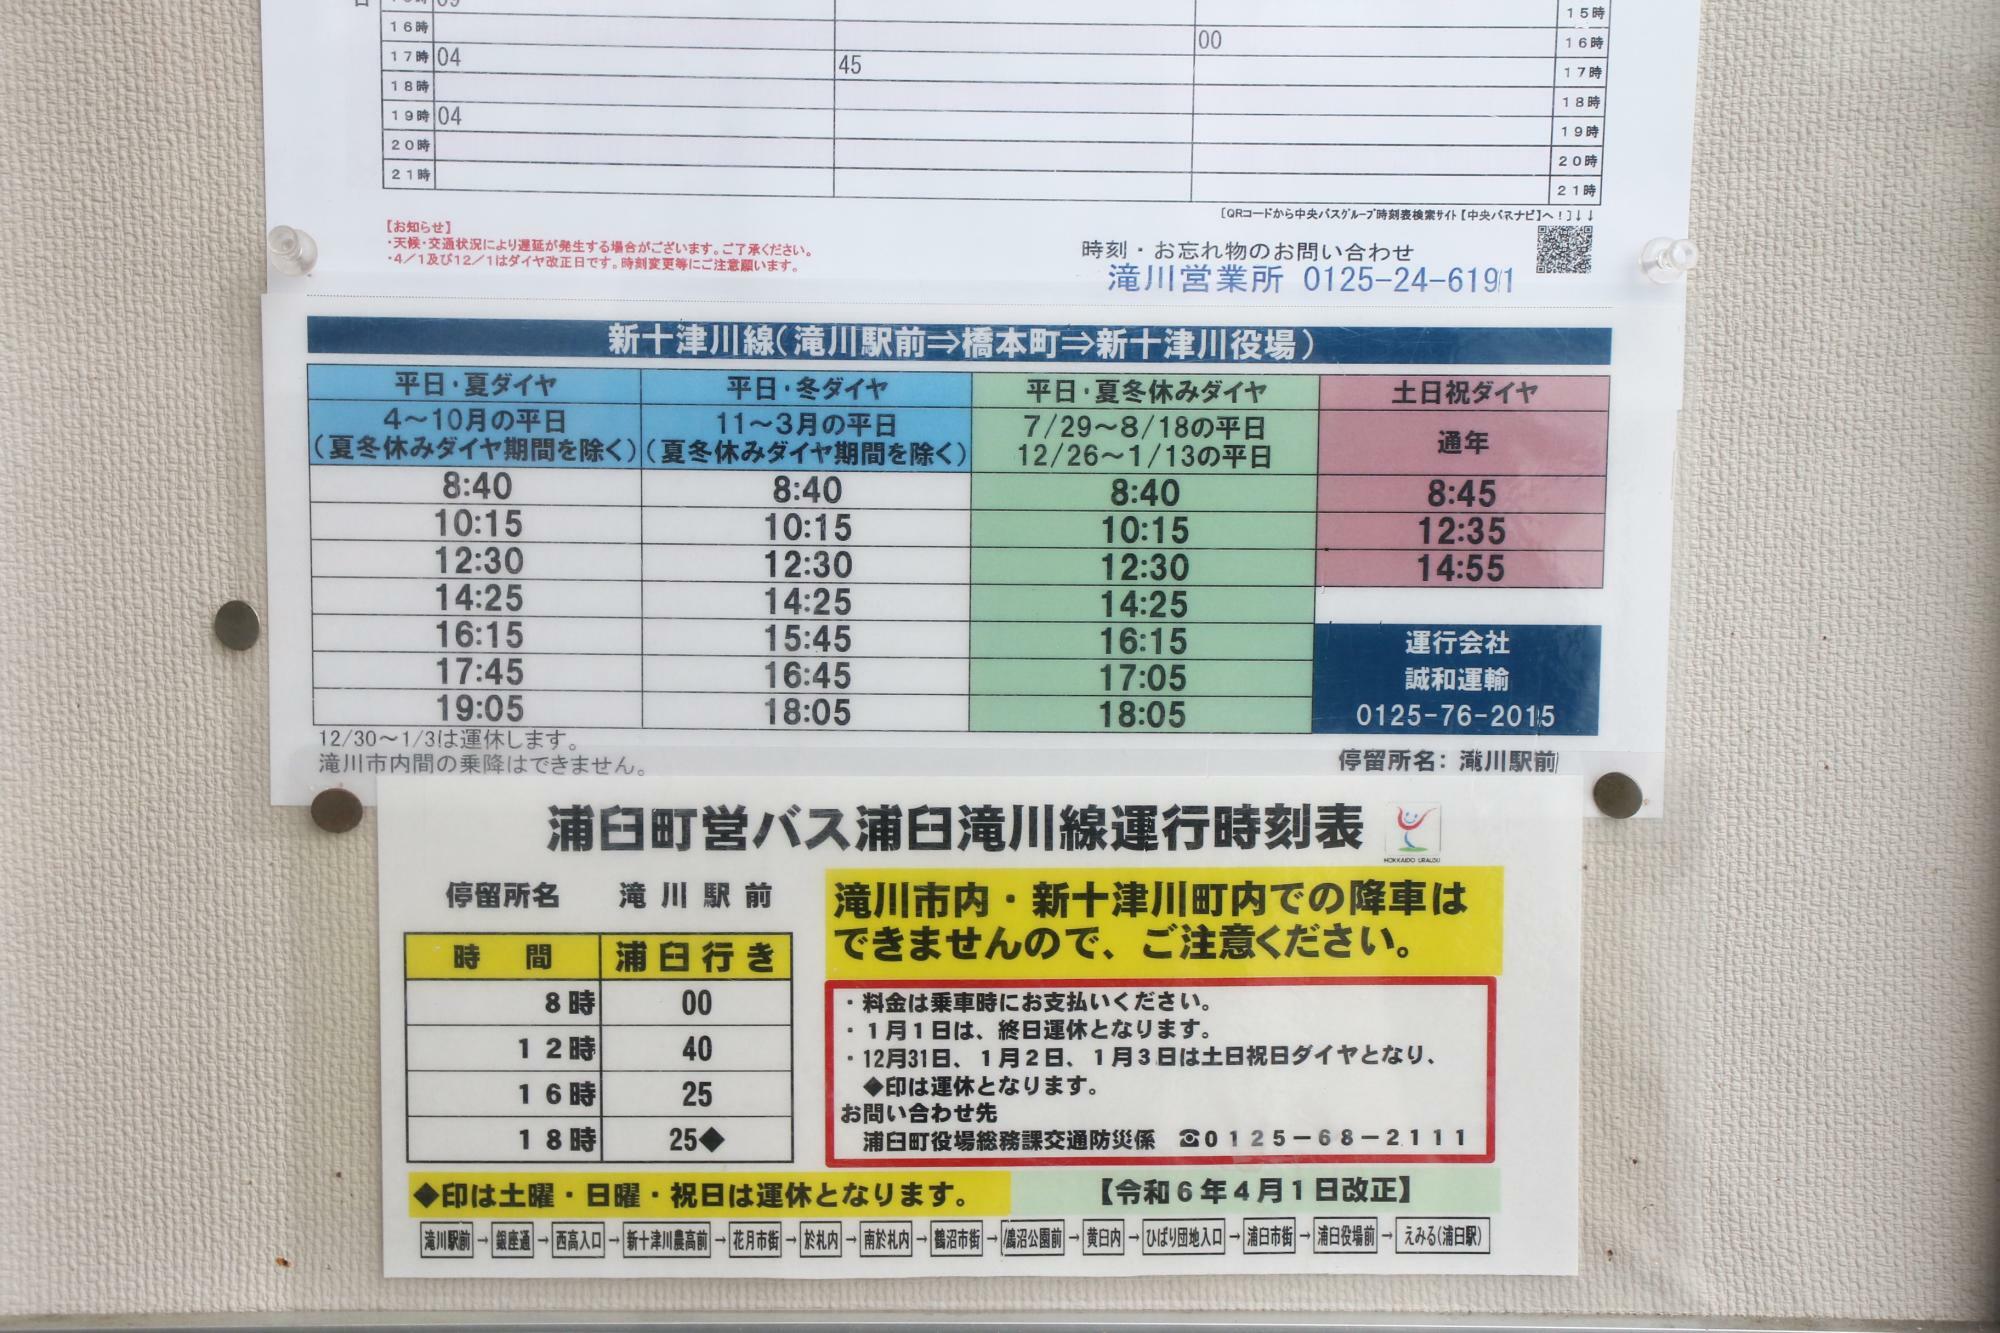 中央バス時刻の下に浦臼町営バス時刻表